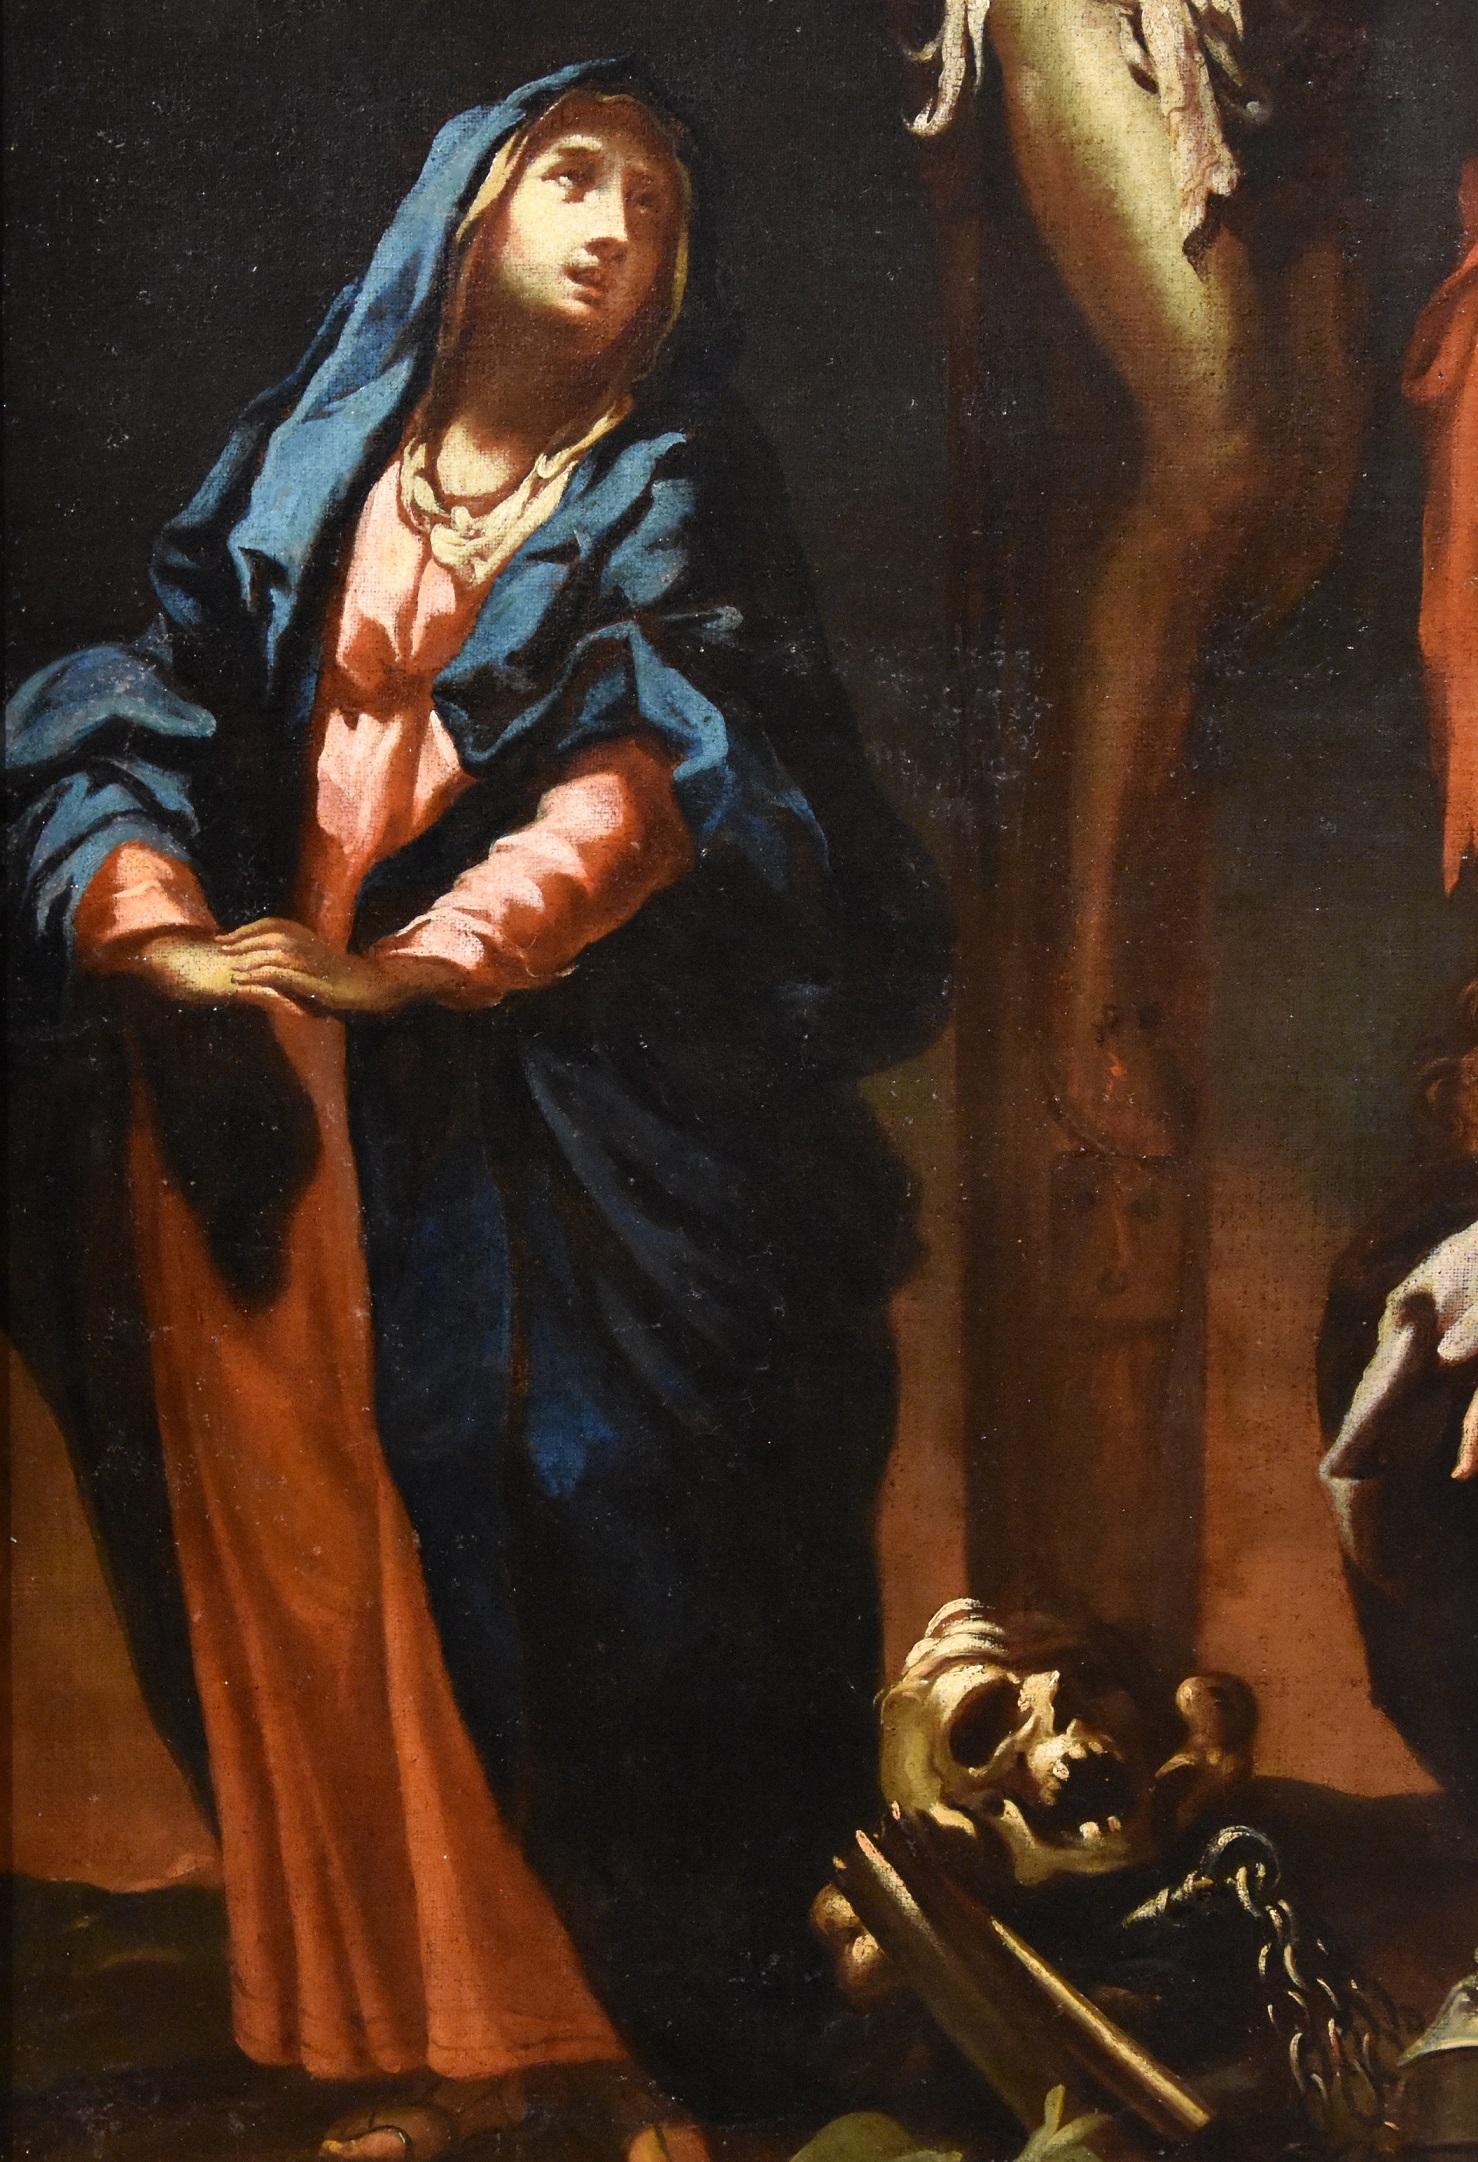 Die Kreuzigung Christi mit der Jungfrau, Maria Magdalena und Johannes dem Evangelisten, Giovanni Camillo Sagrestani (Florenz, 1660 - 1731) zugeschrieben

Technik/Maße: Öl auf Leinwand (106 x 79 - im Rahmen 118 x 90 cm.)

Dieses Werk von